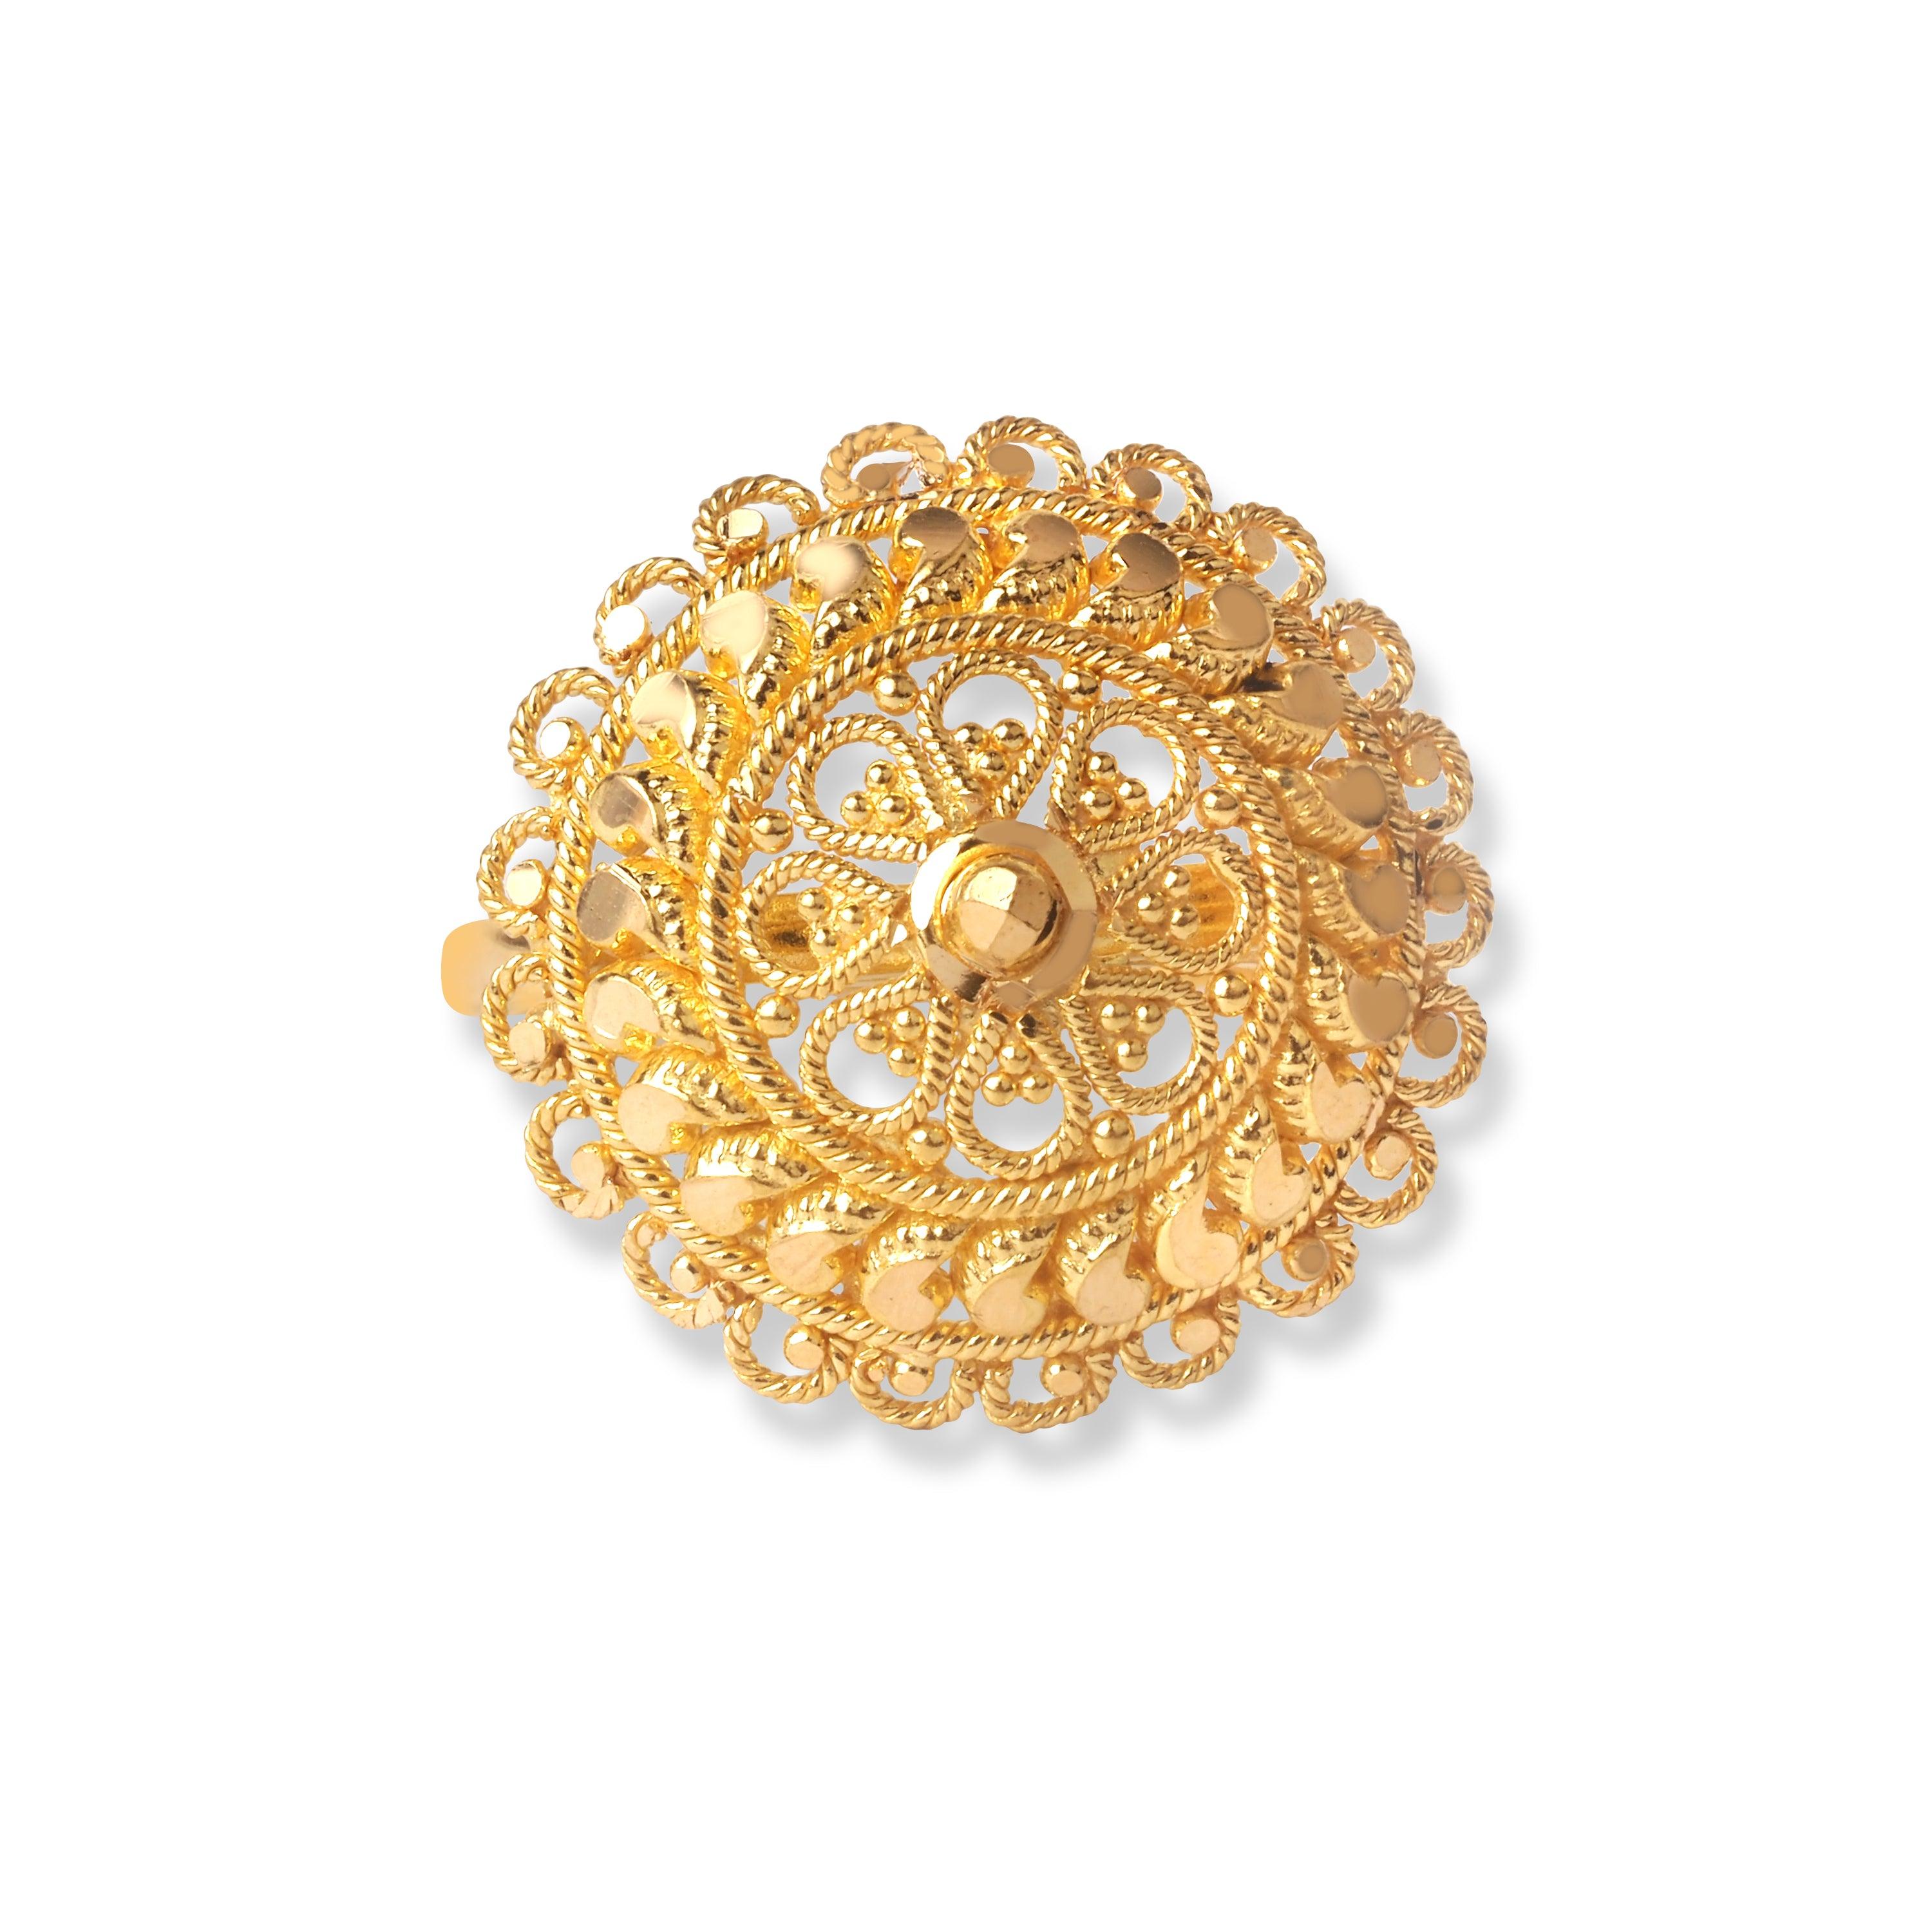 22ct Gold Filigree Ring (3.7g) LR-6570 - Minar Jewellers